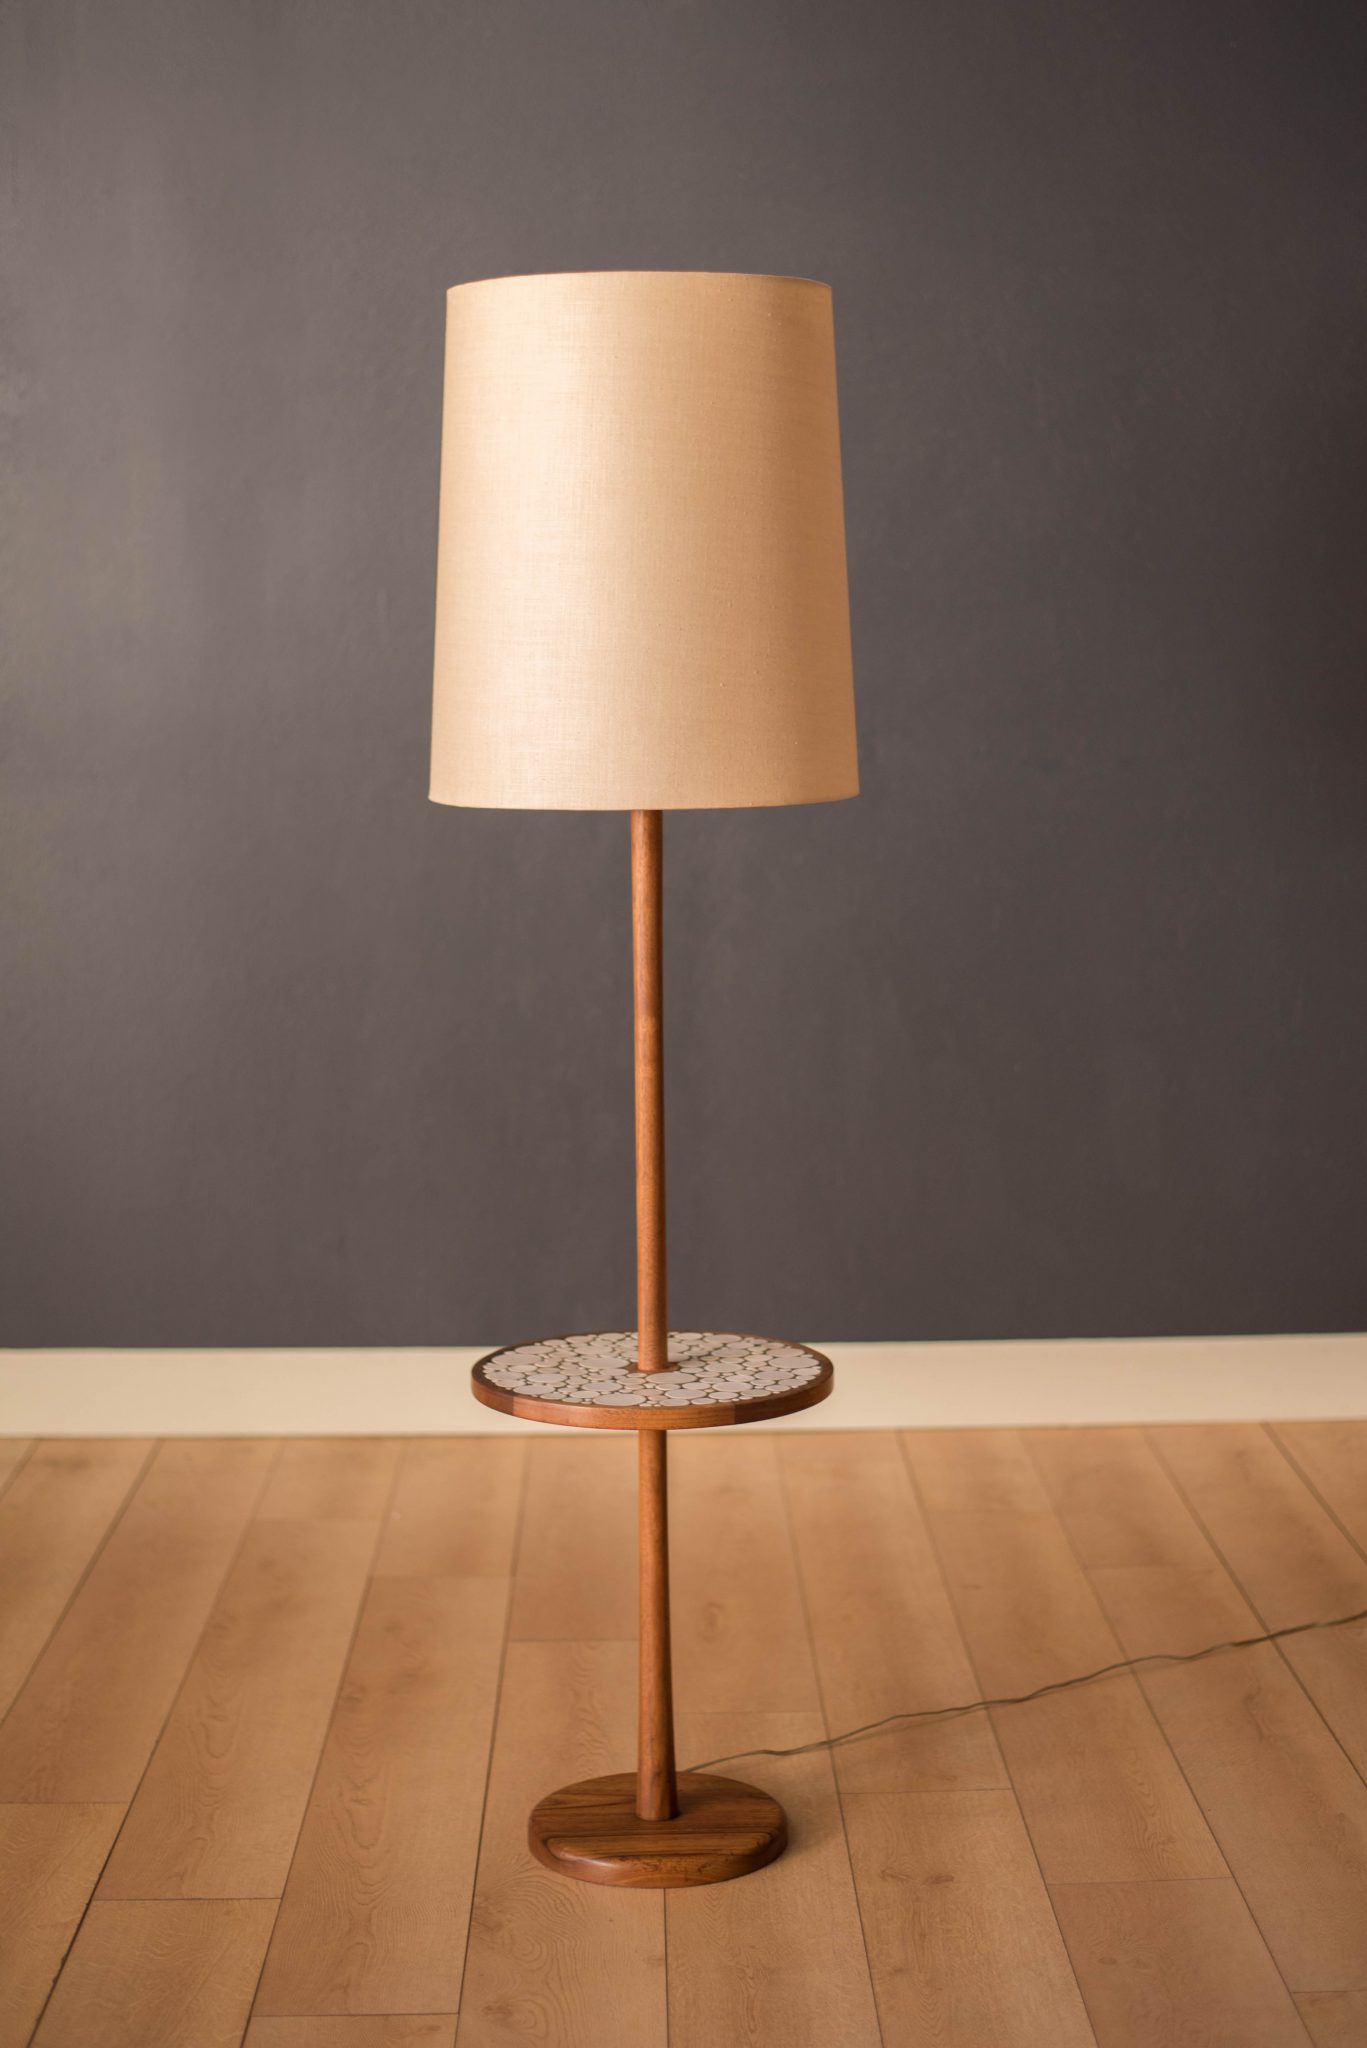 Vintage Martz Walnut Floor Lamp With, Vintage Side Table Floor Lamp